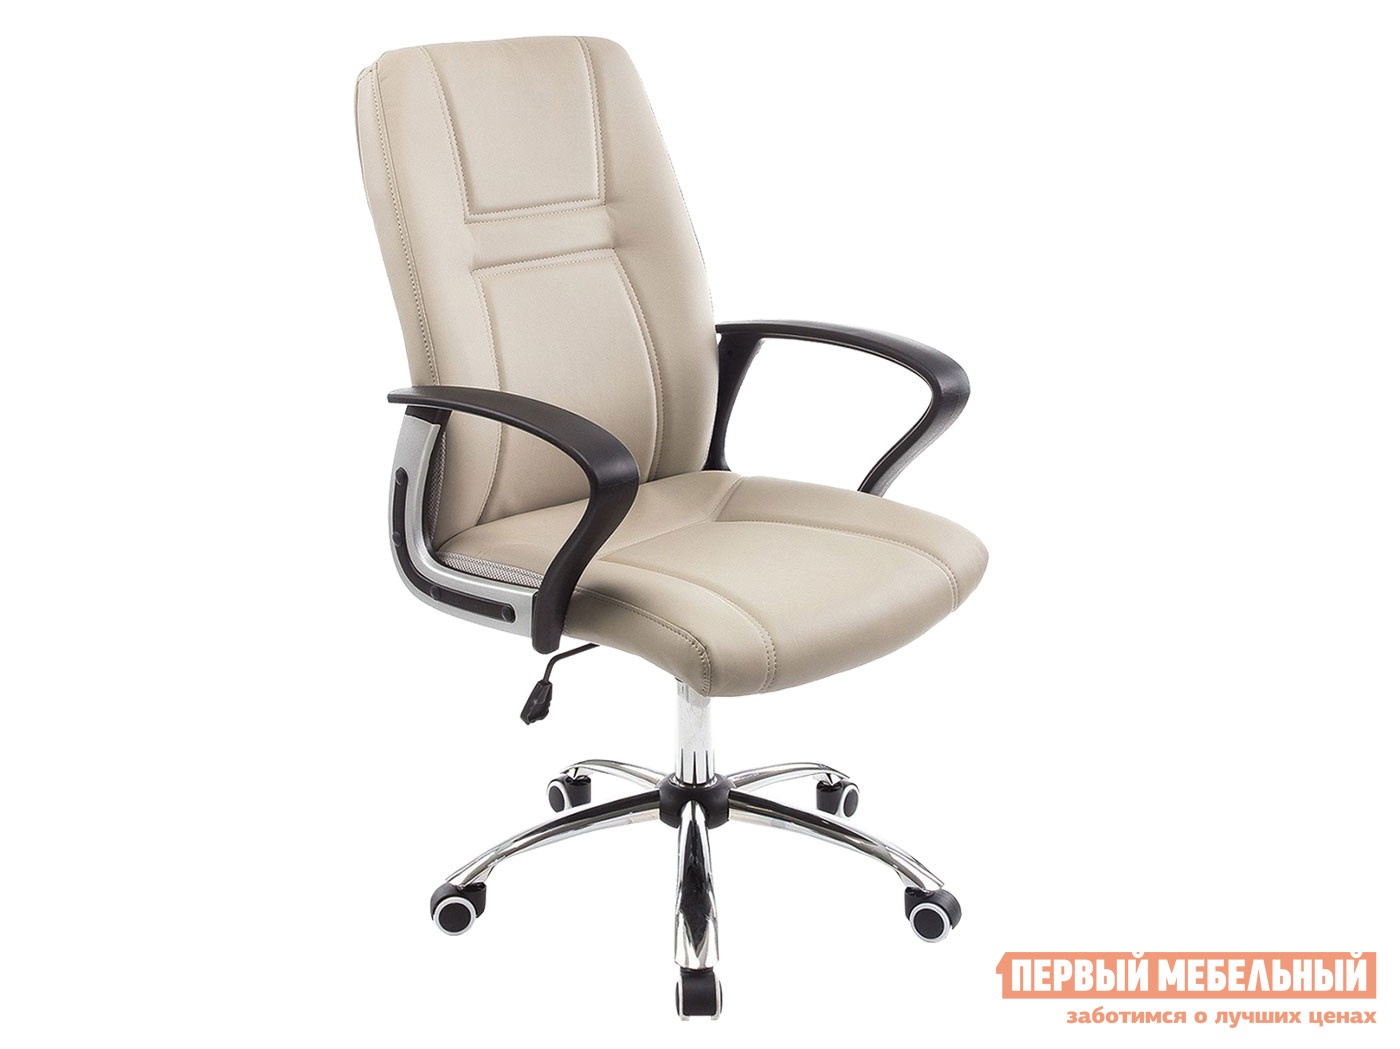 Офисное кресло blanes капучино, искусственная кожа